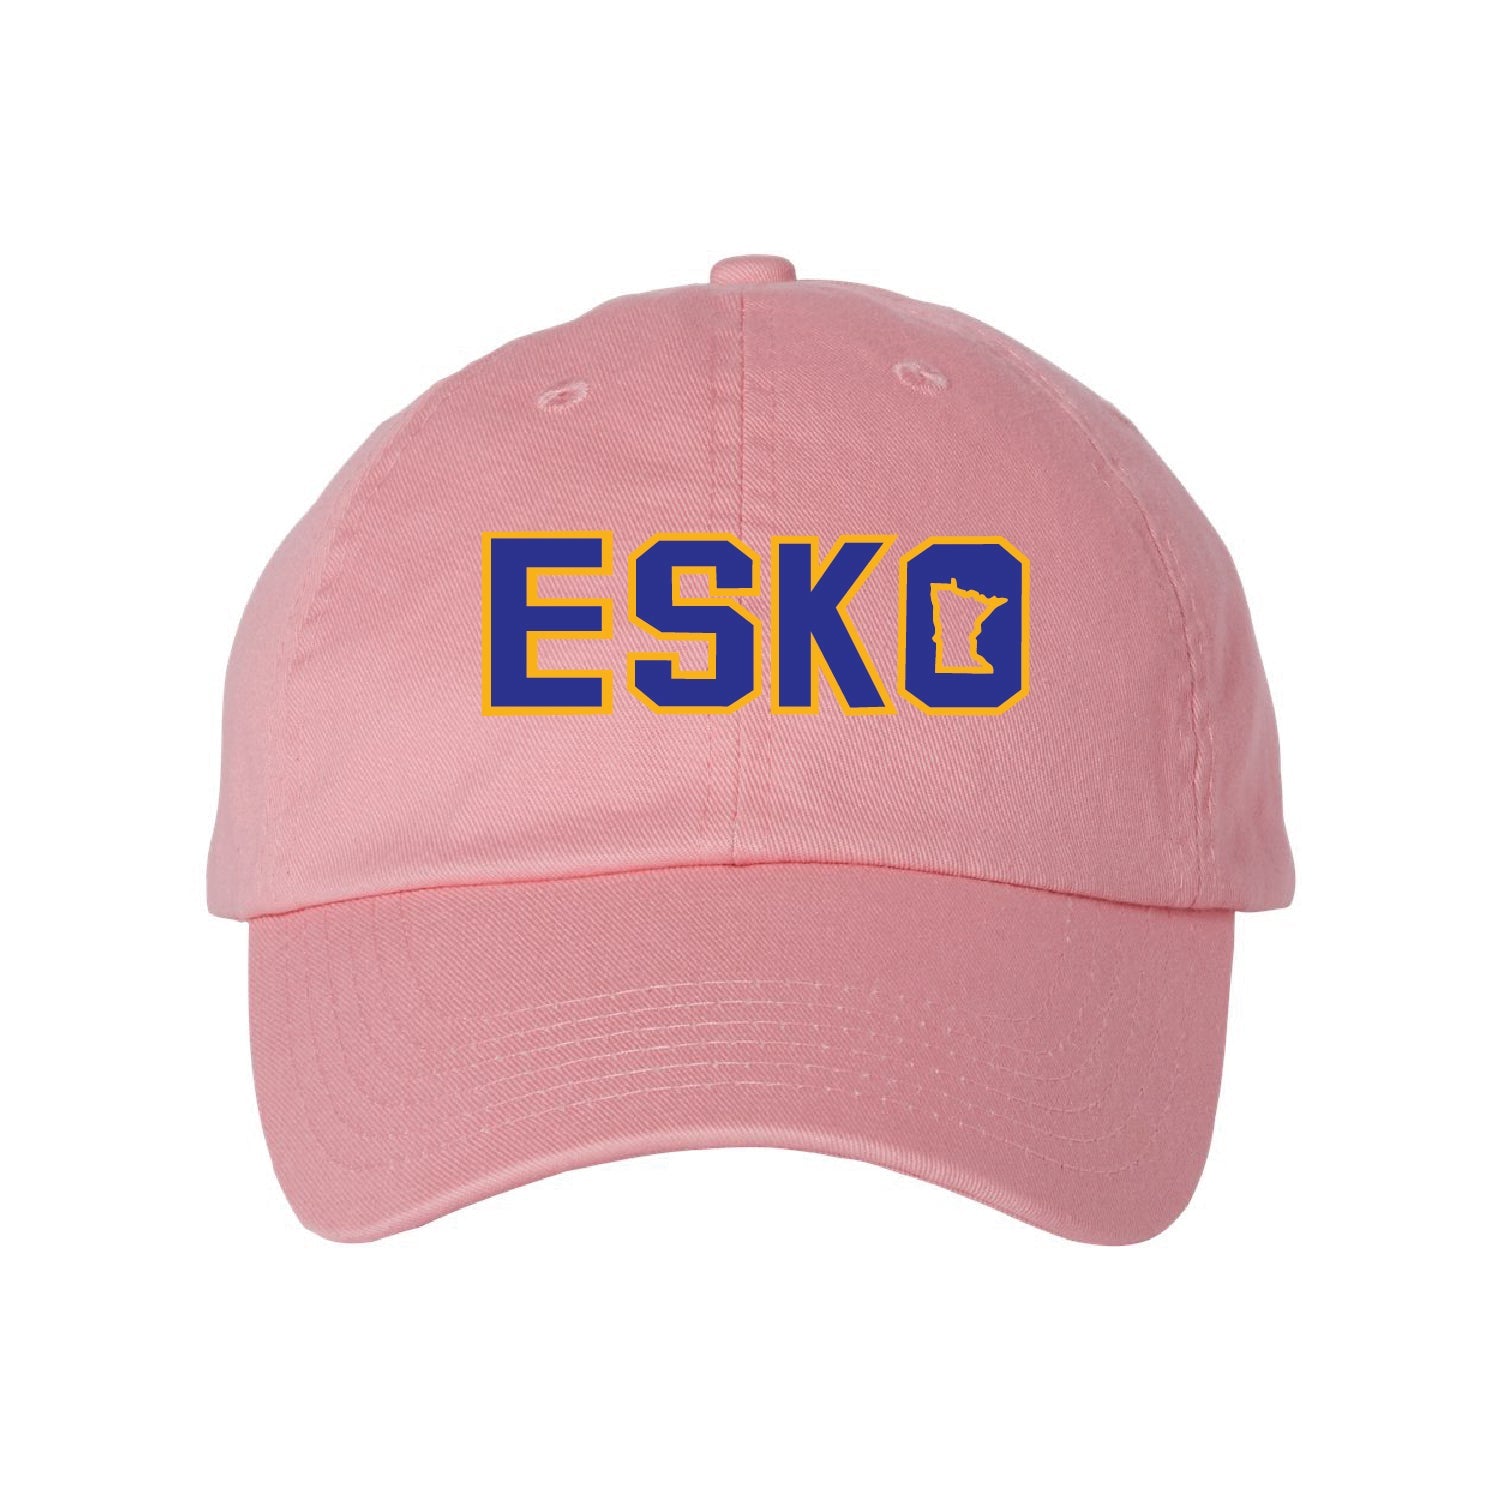 Esko Dad Cap - DSP On Demand